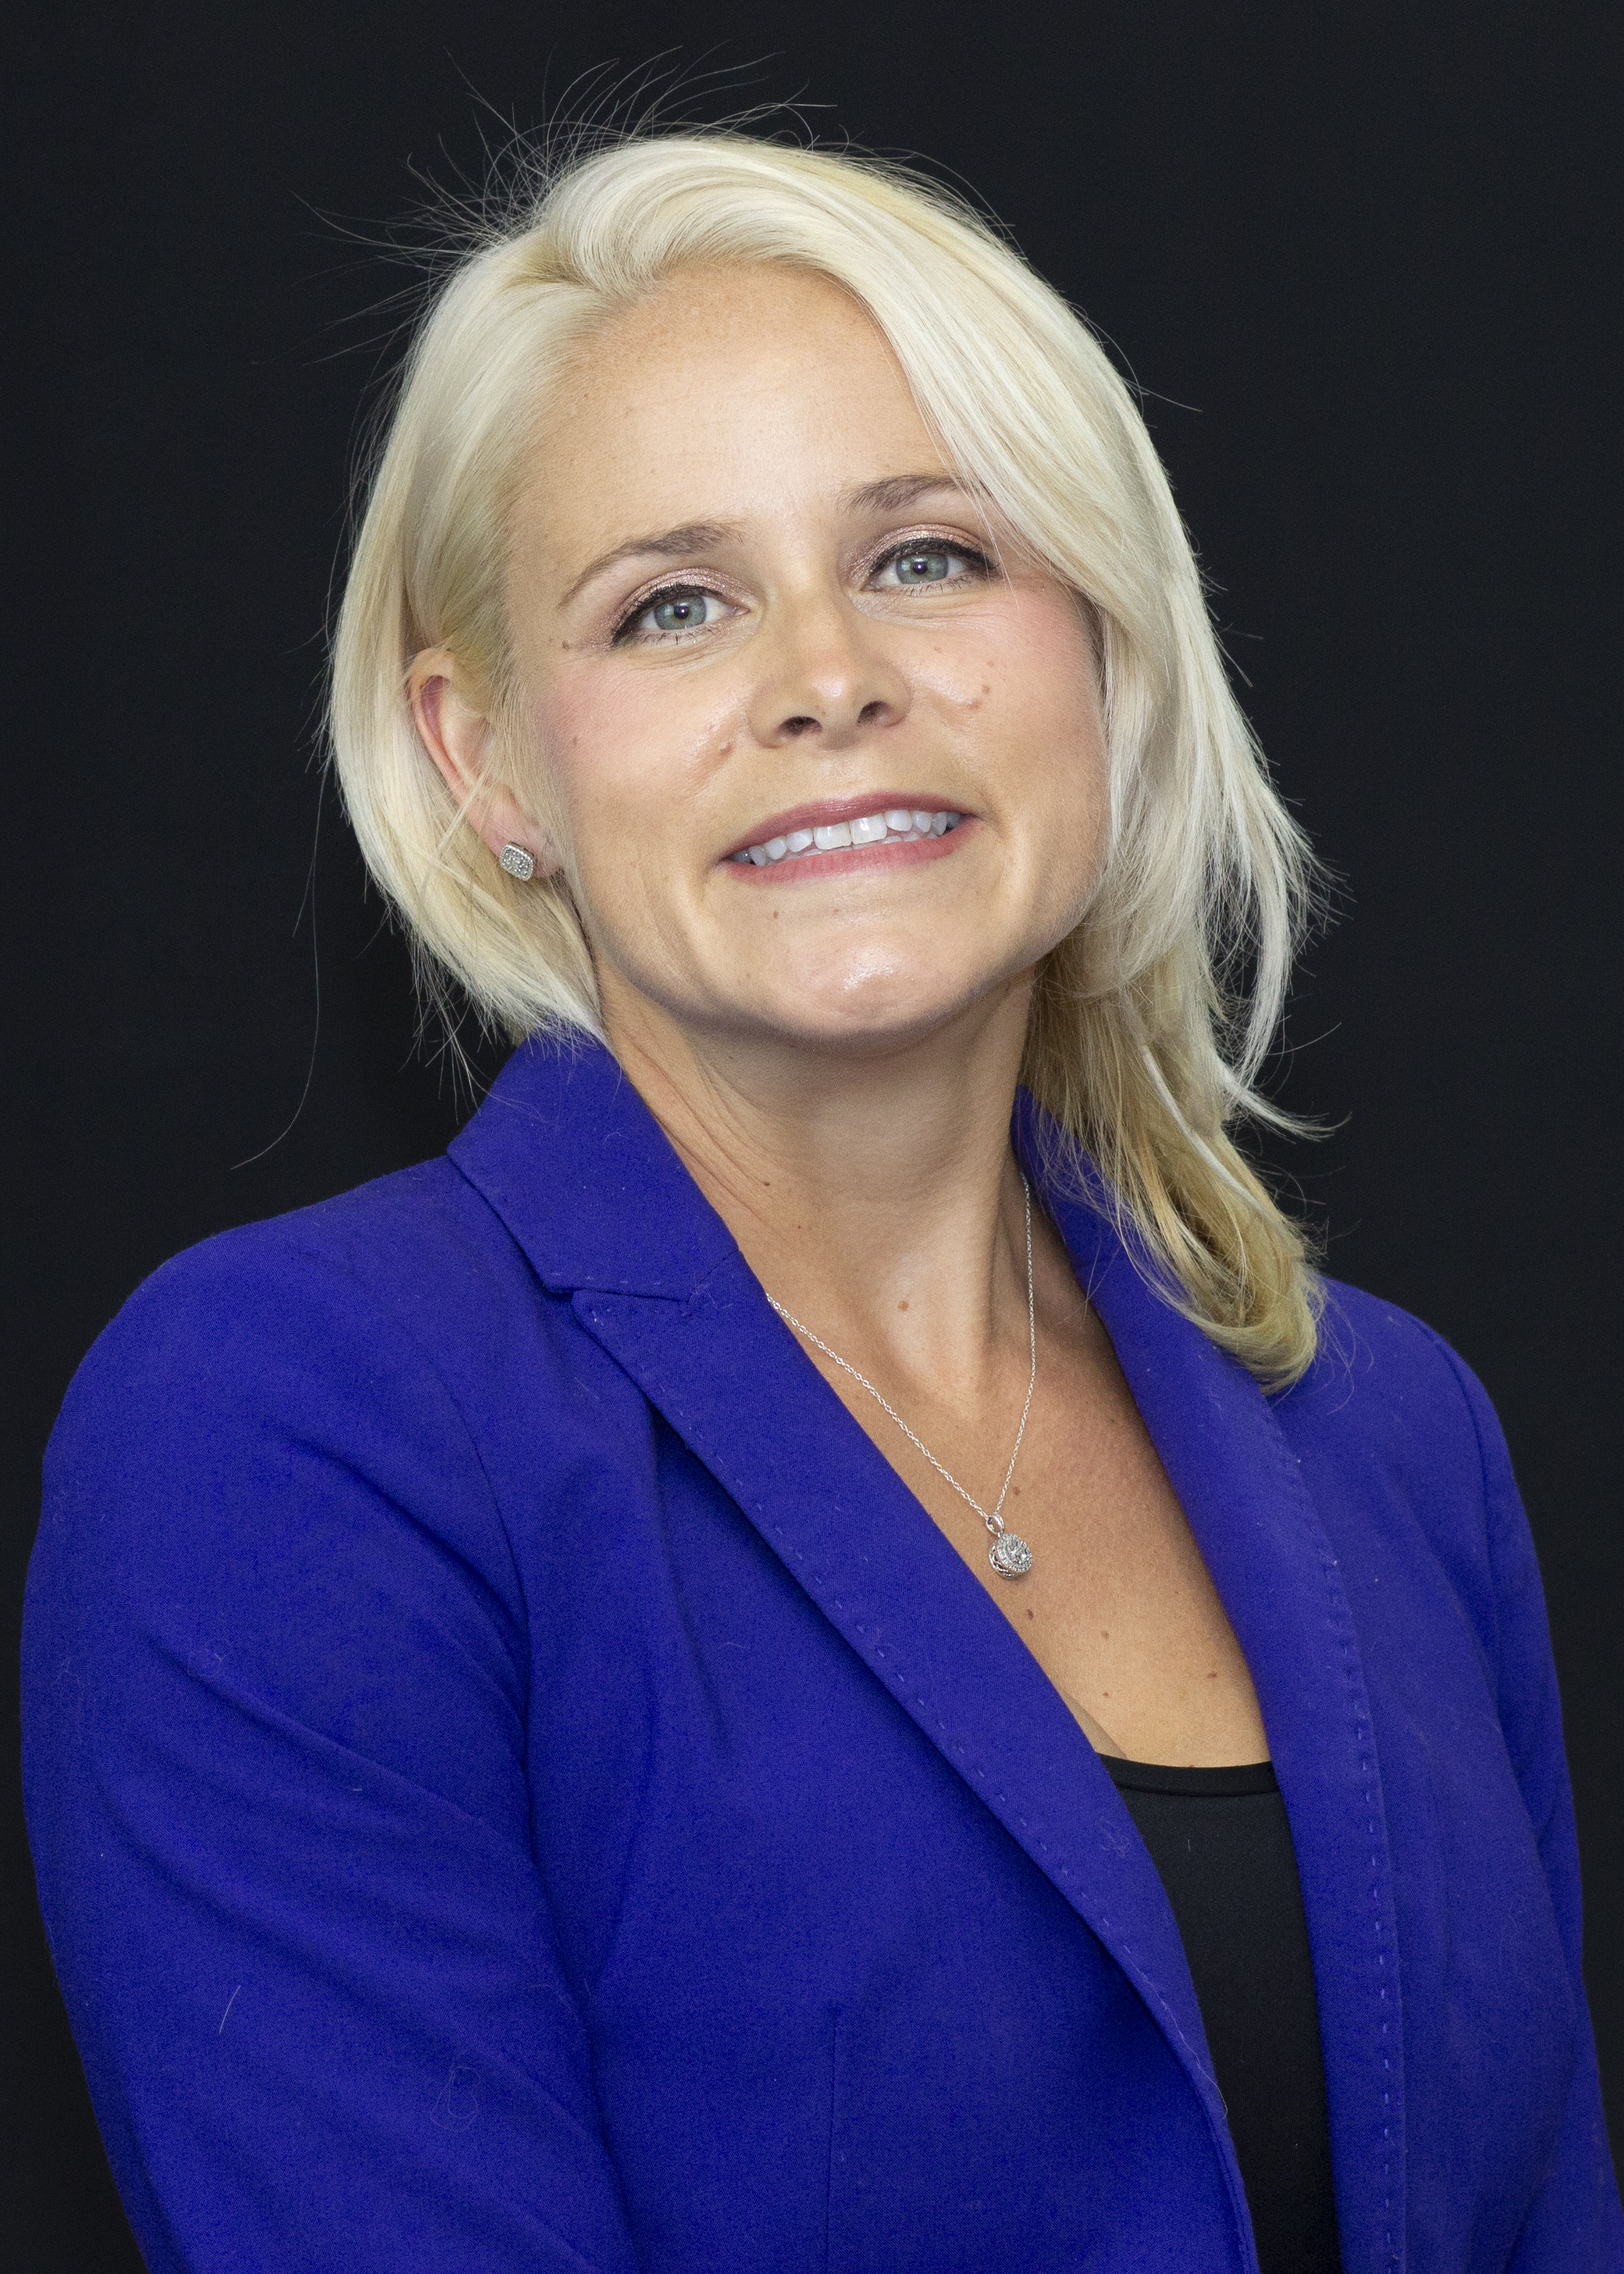 Image of presenter Lauren Sastre